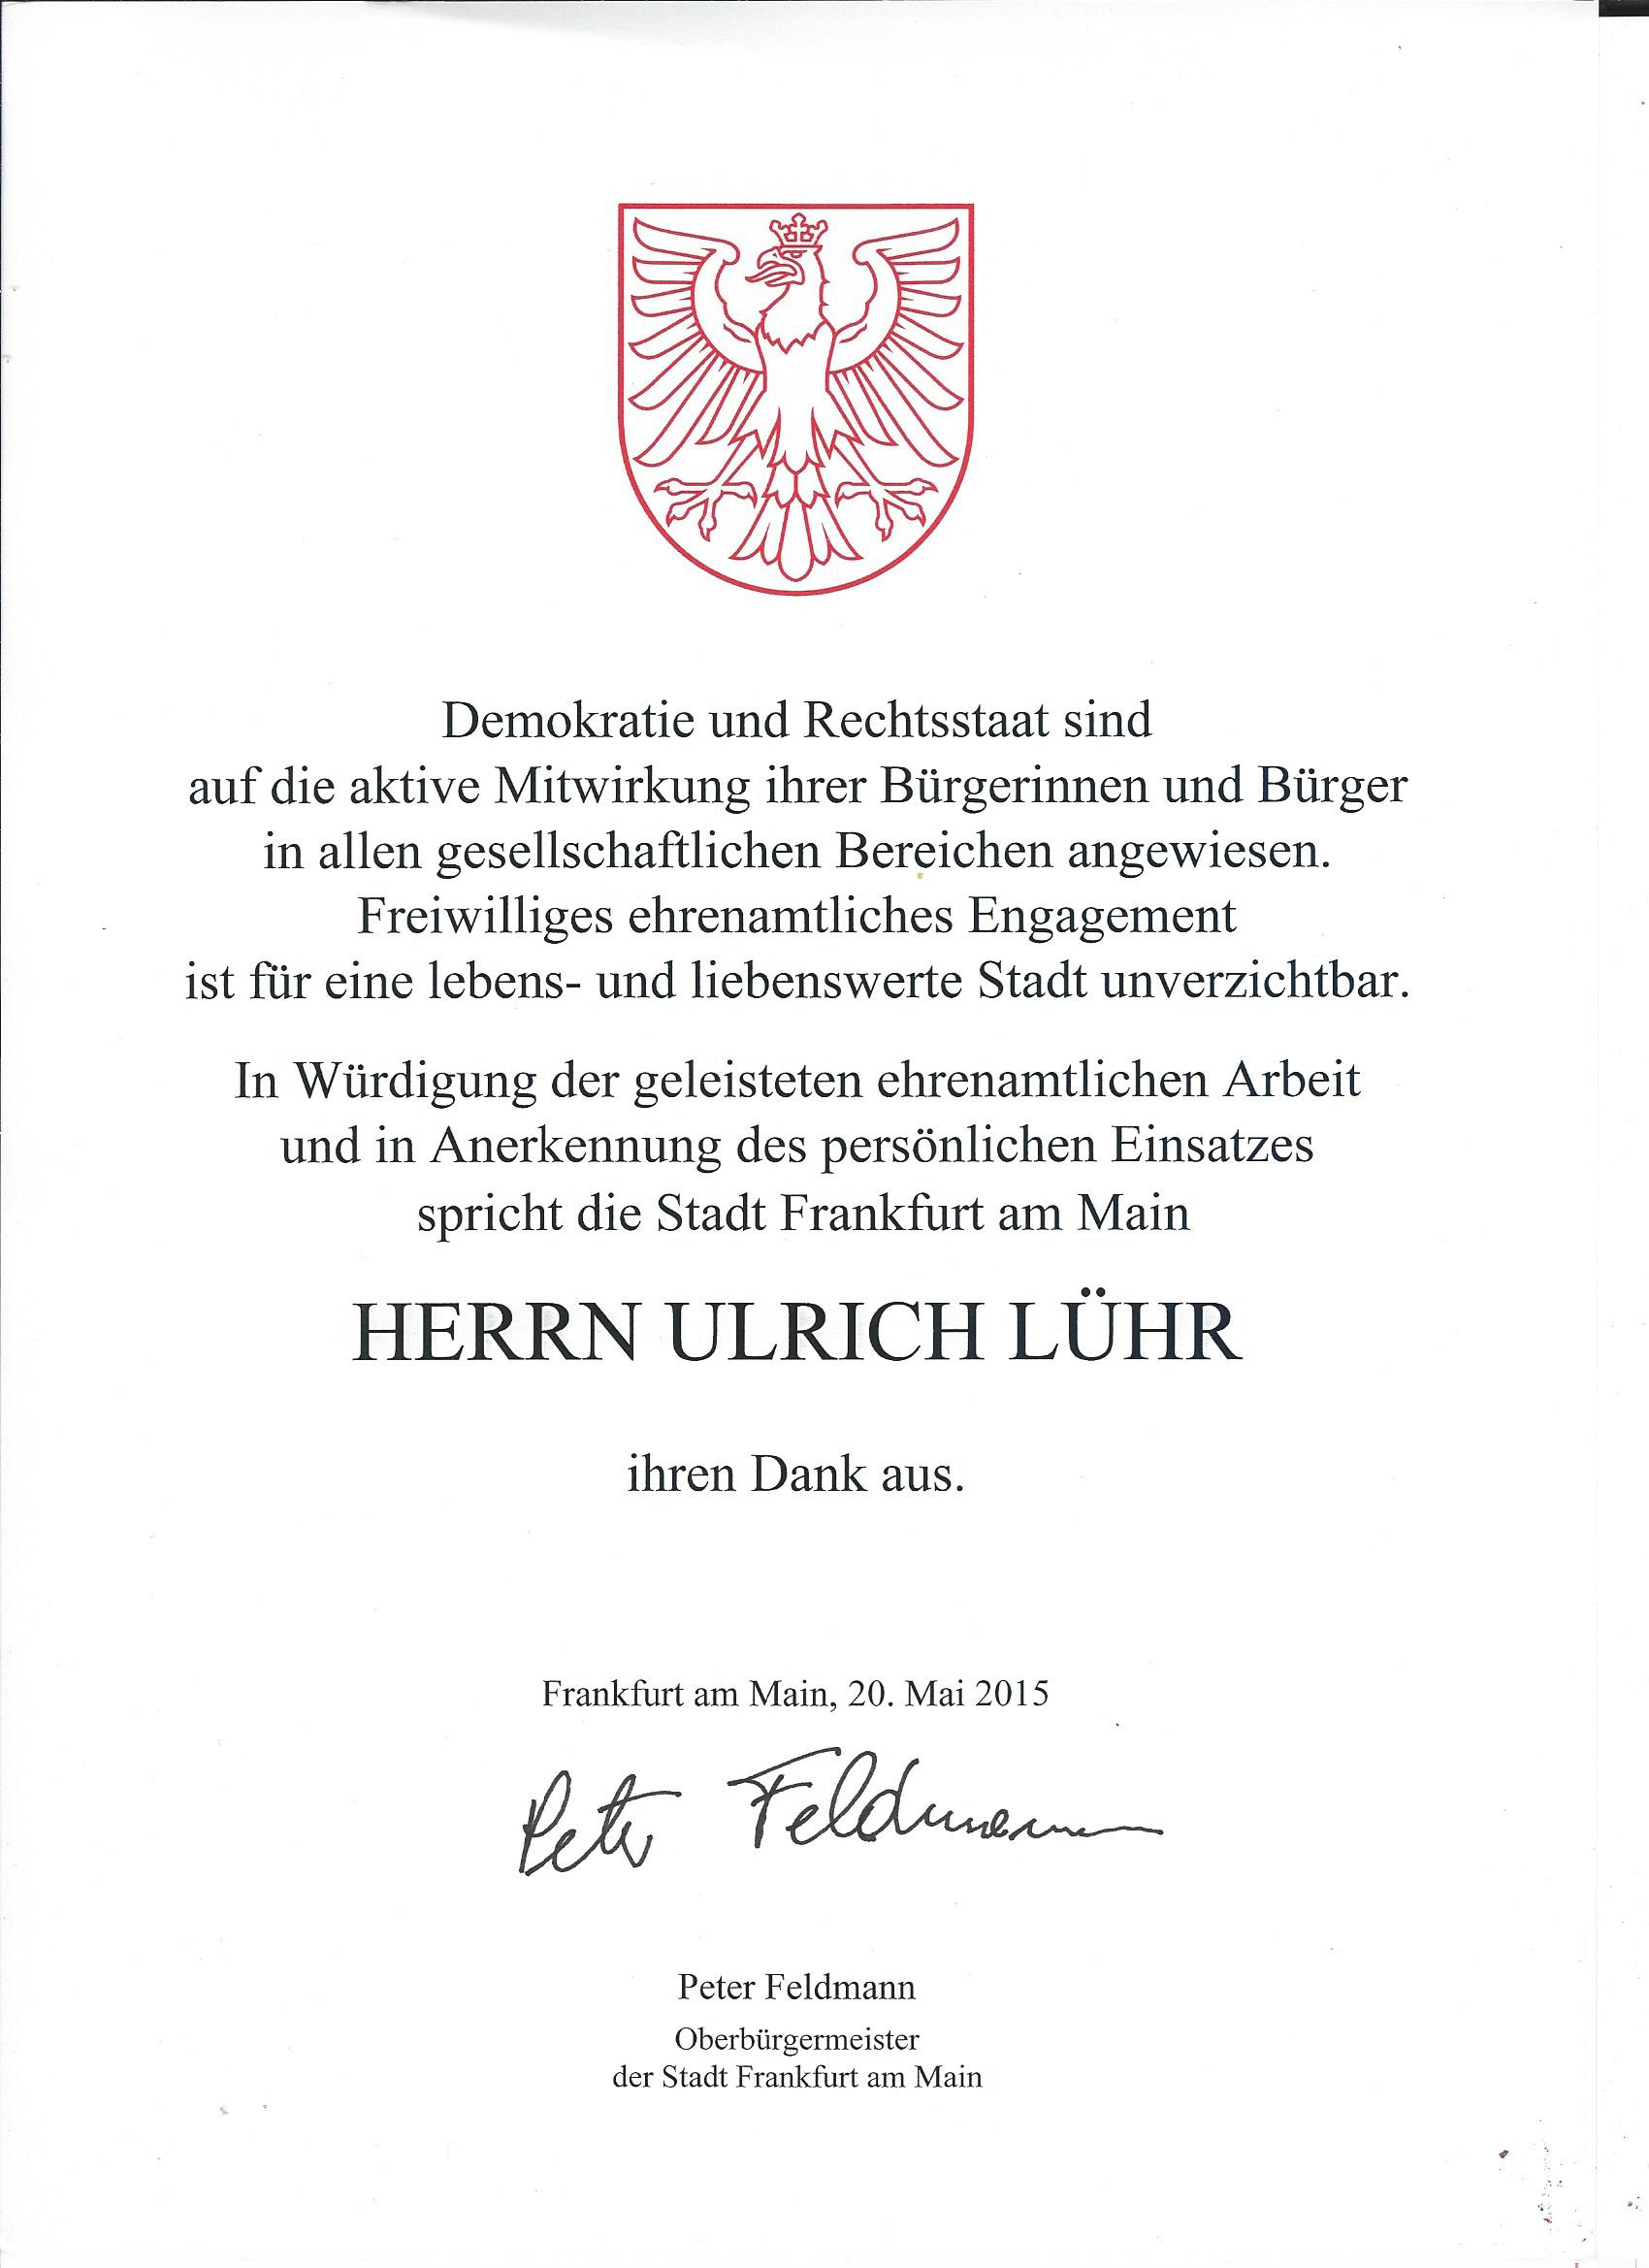 Ehrenamt-Urkunde 2015 der Stadt Frankfurt für Ulrich Lühr